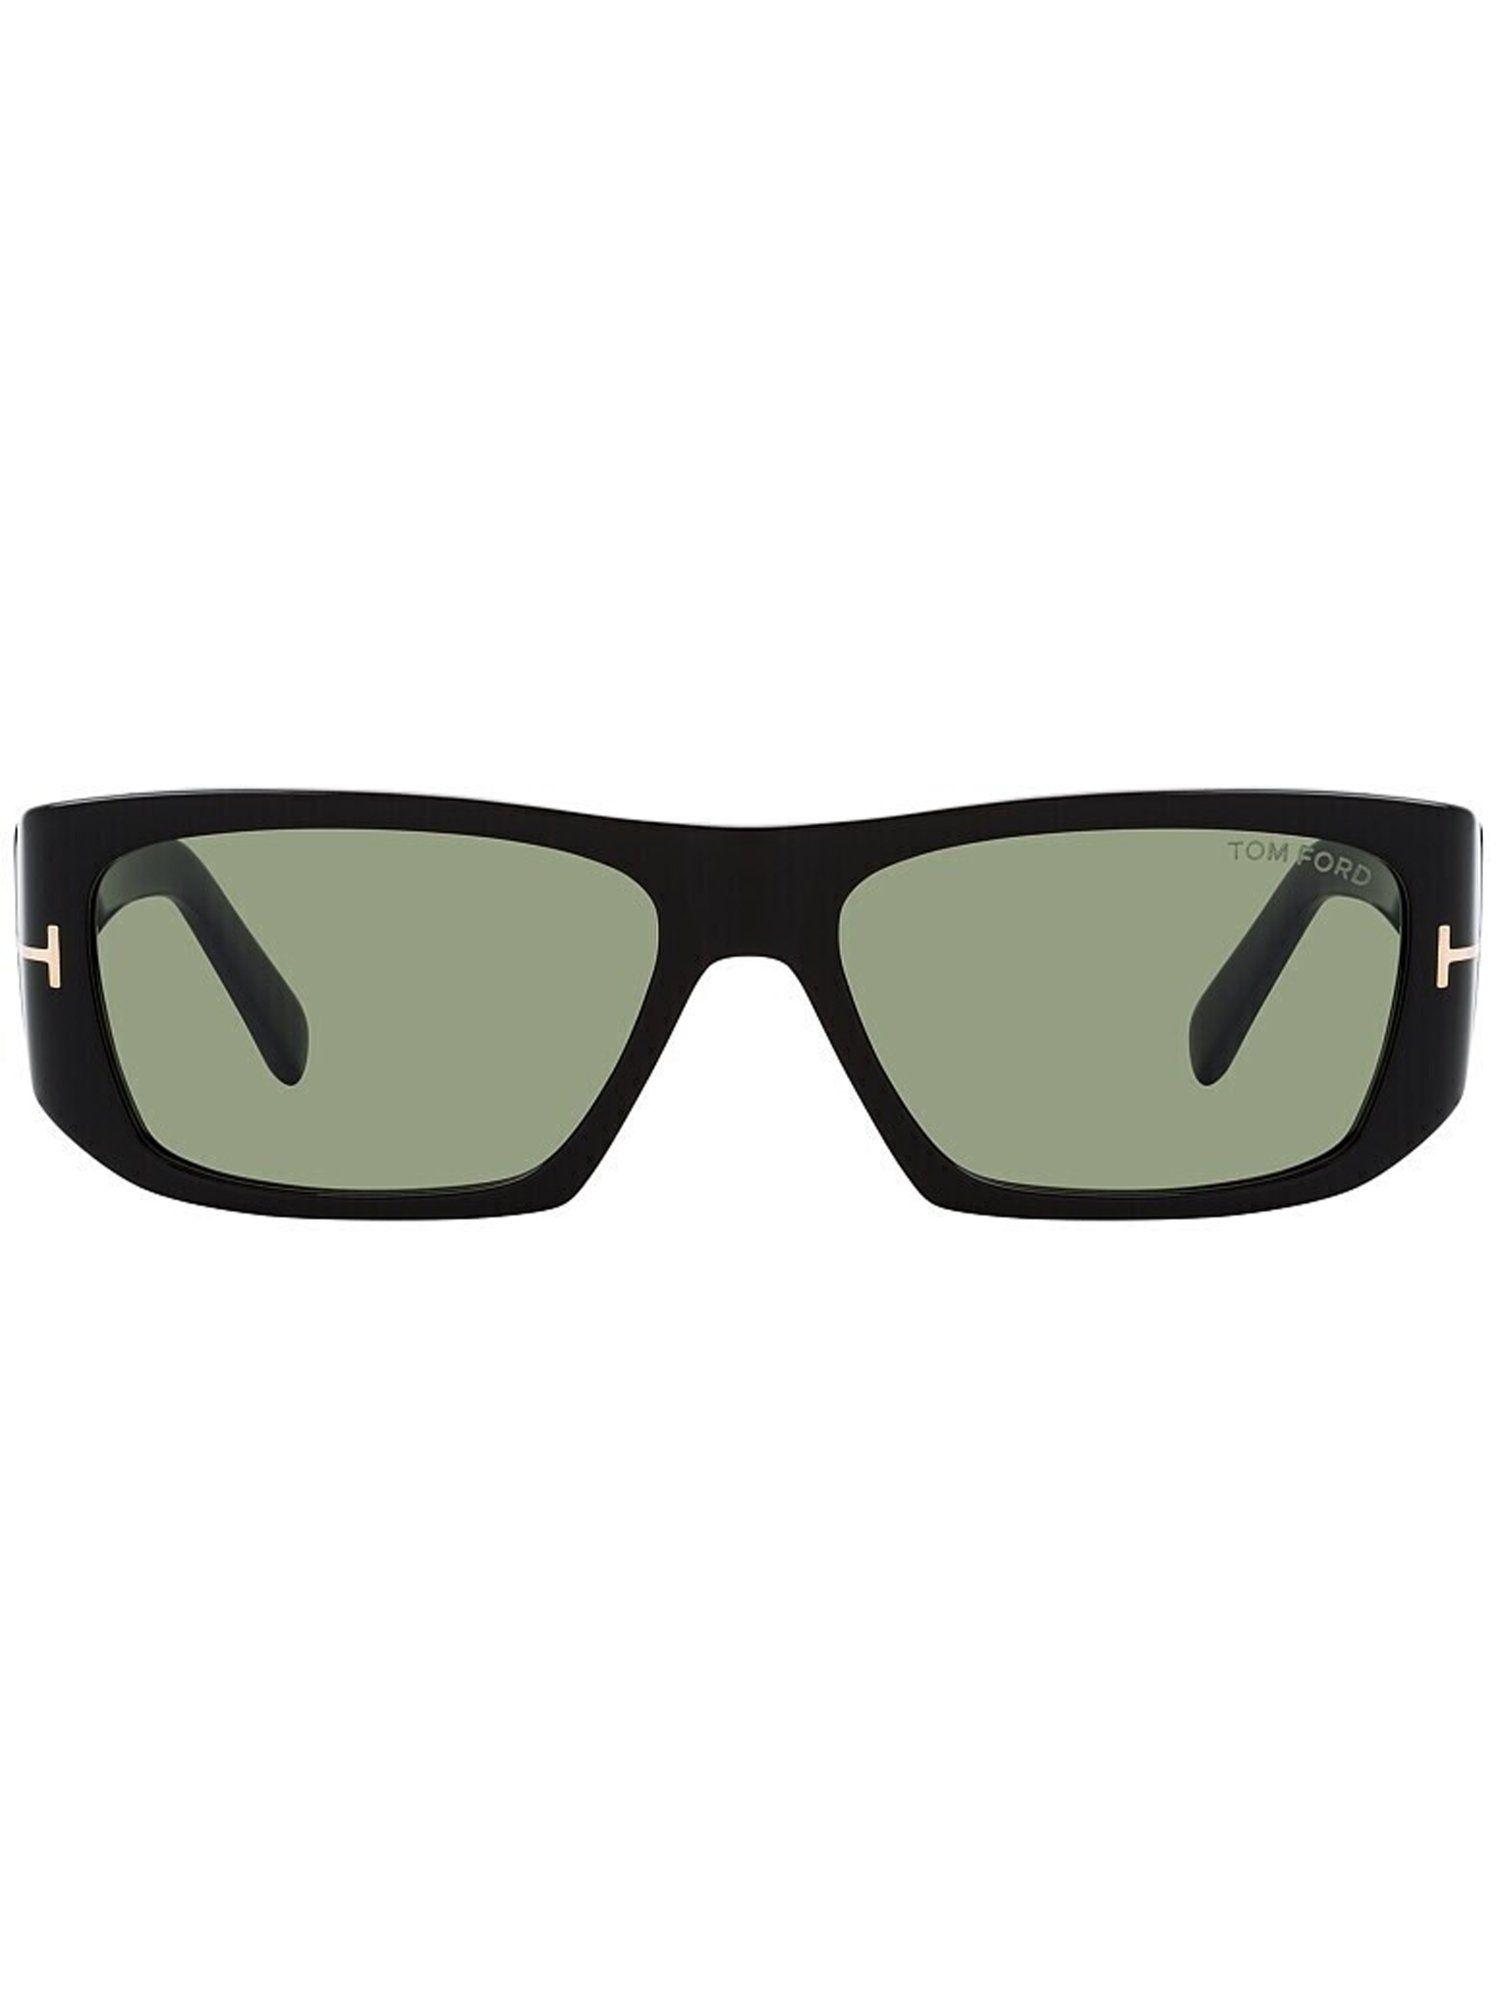 unisex rectangle green lens sunglasses - ft0986 56 01n